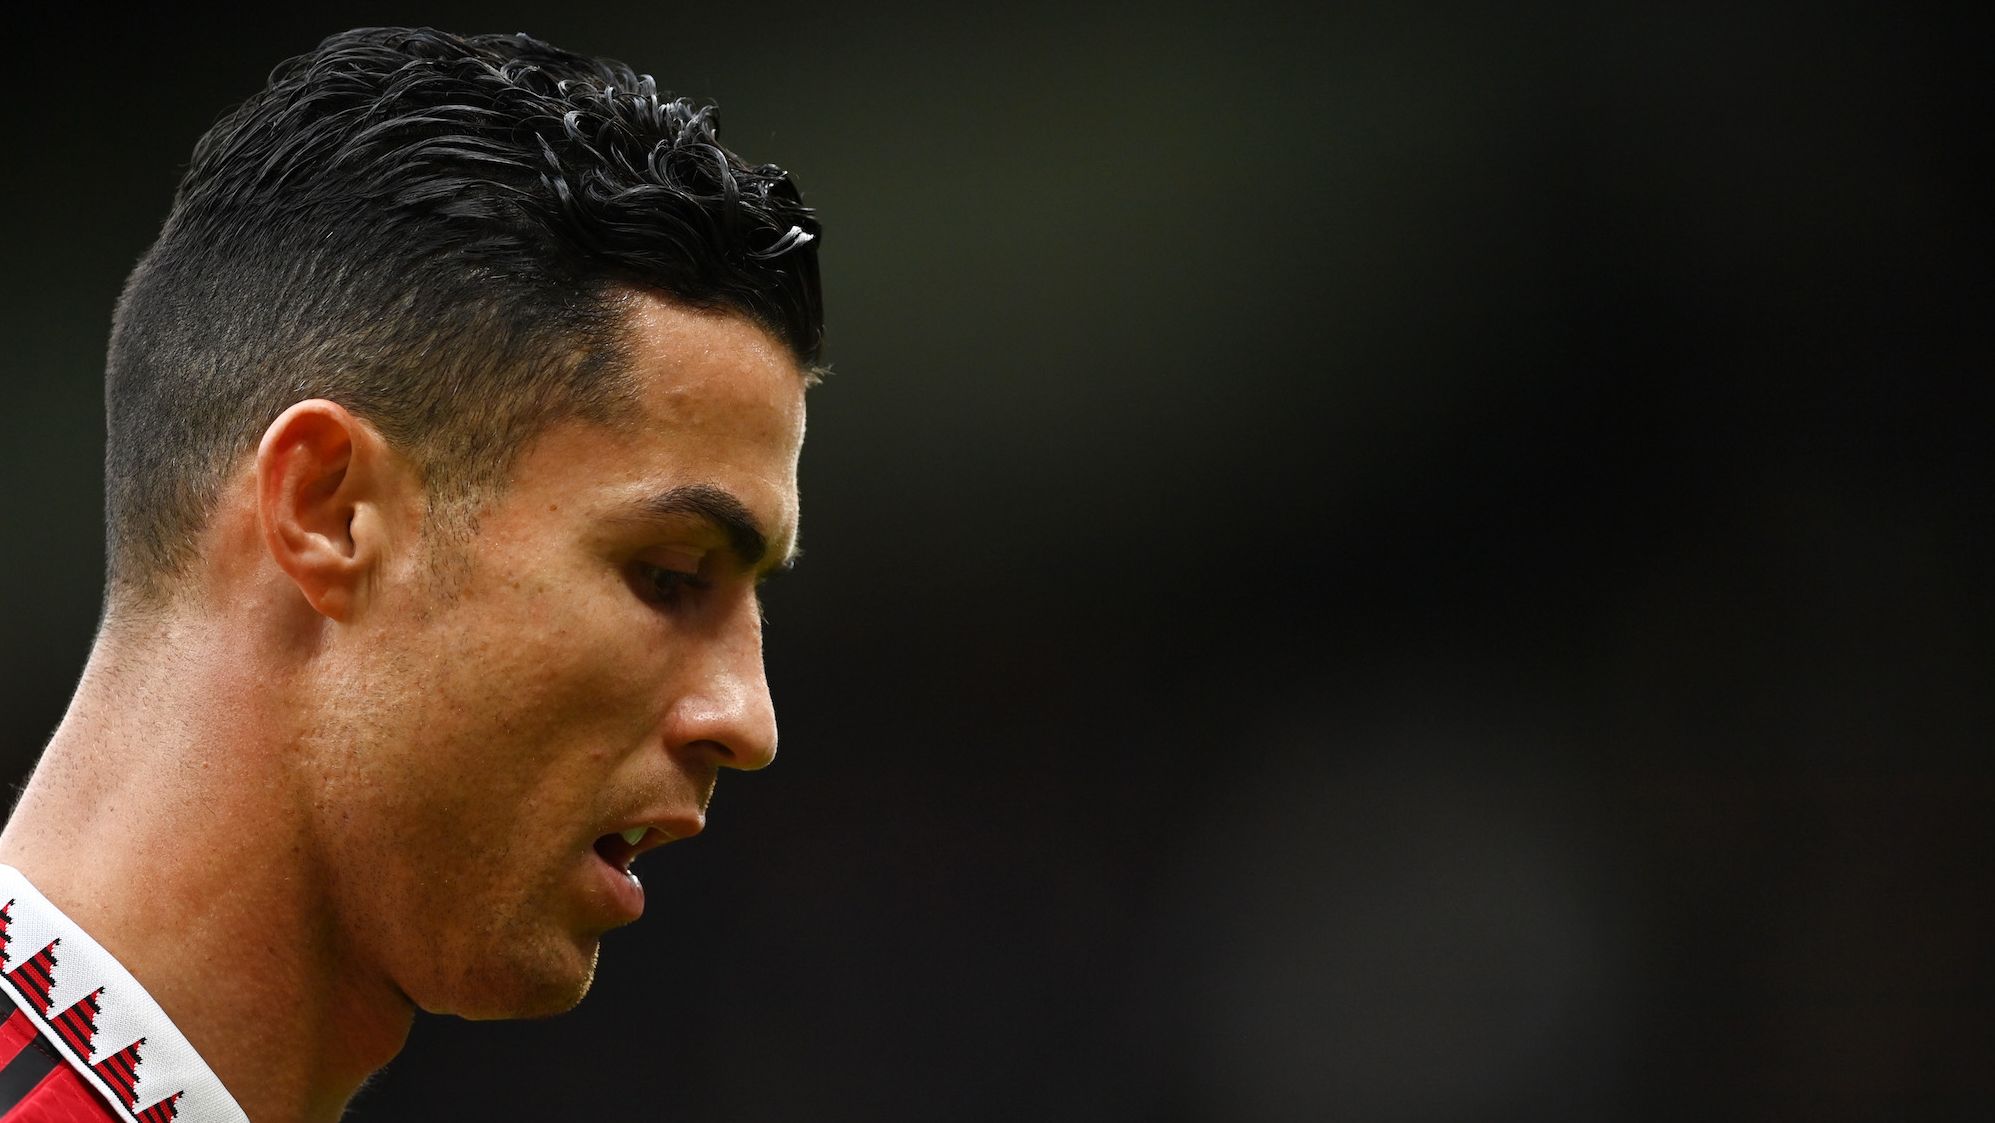 Cristiano Ronaldo - Soccer News, Rumors, & Updates